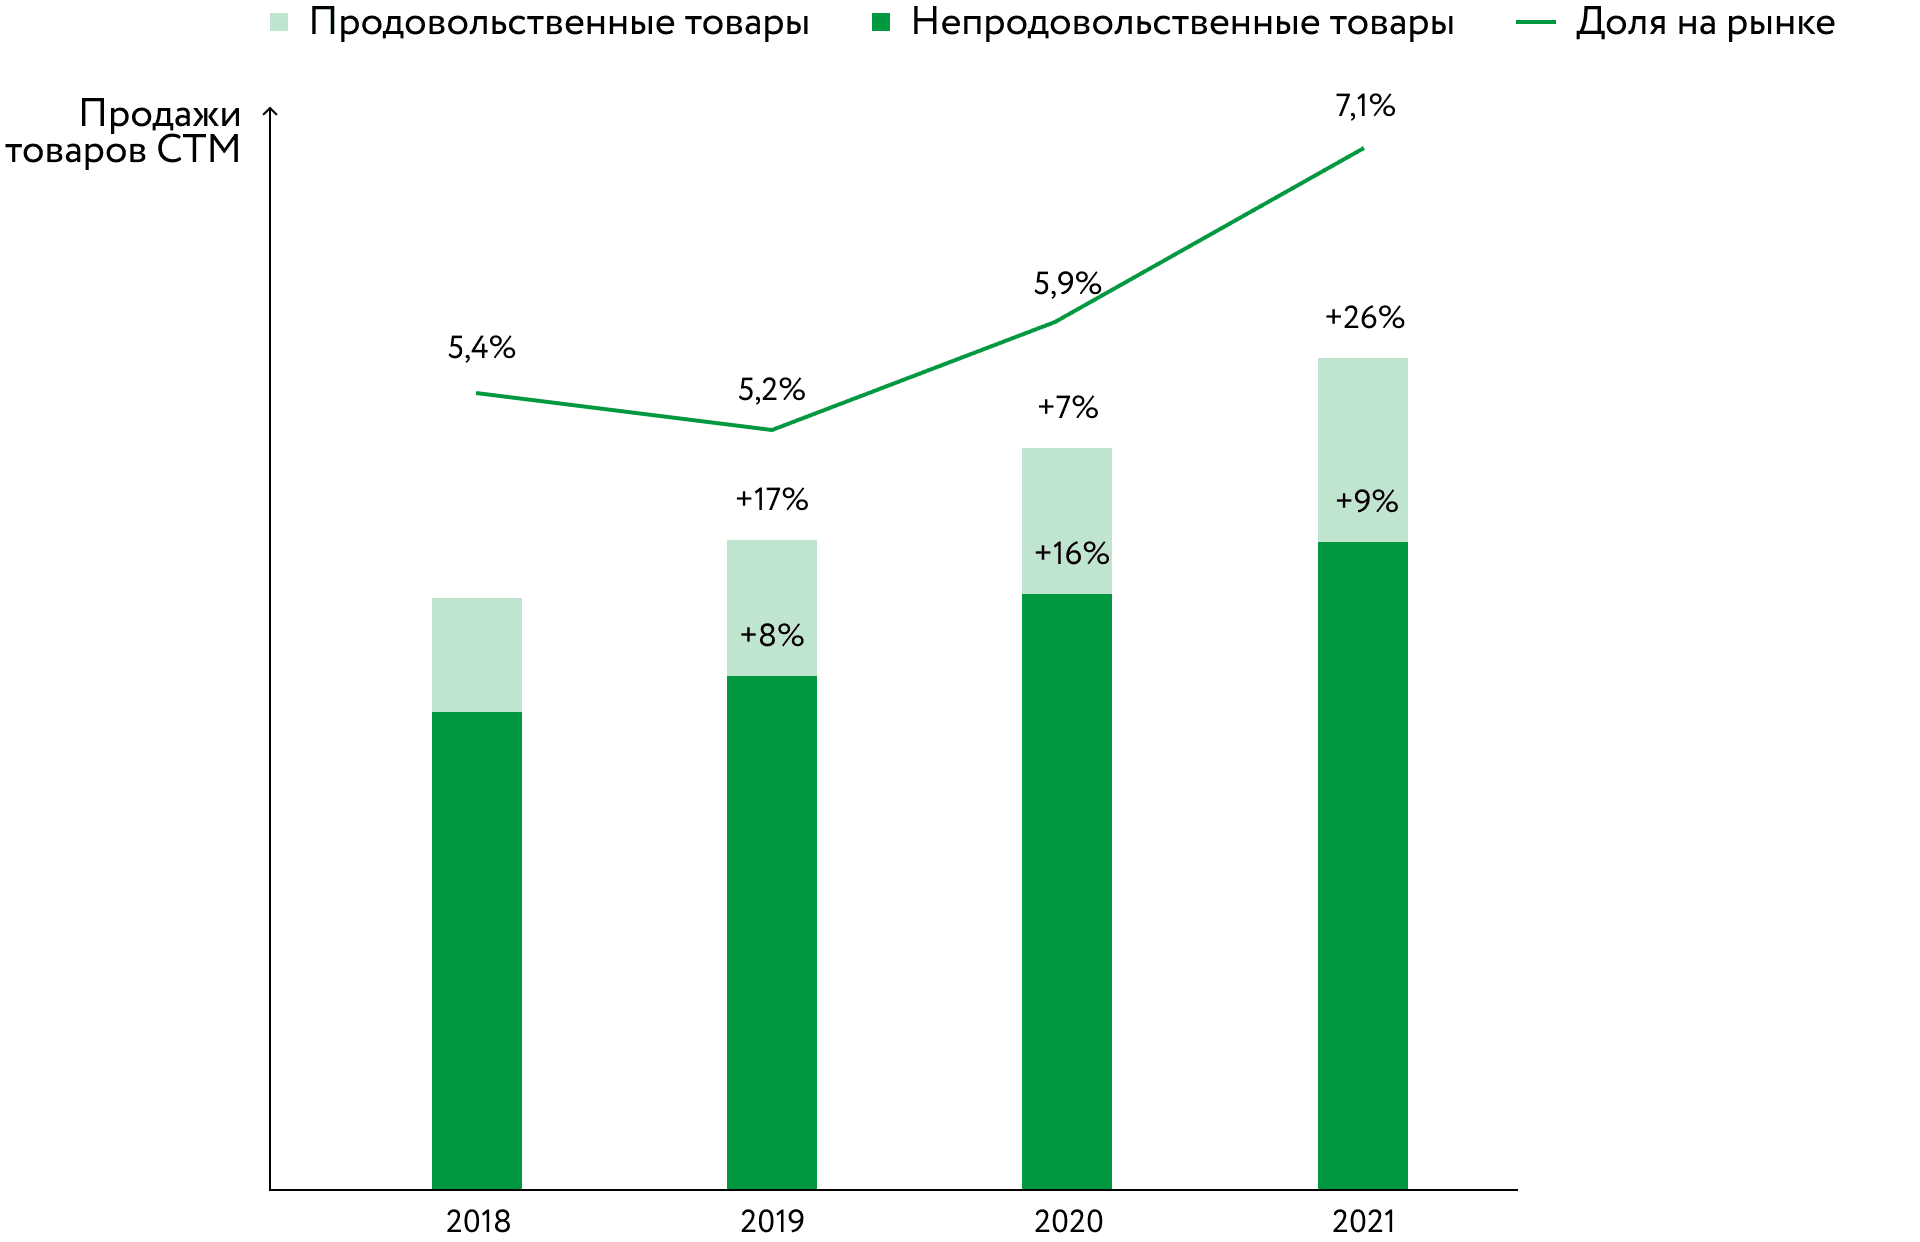 Динамика продаж товаров СТМ в России